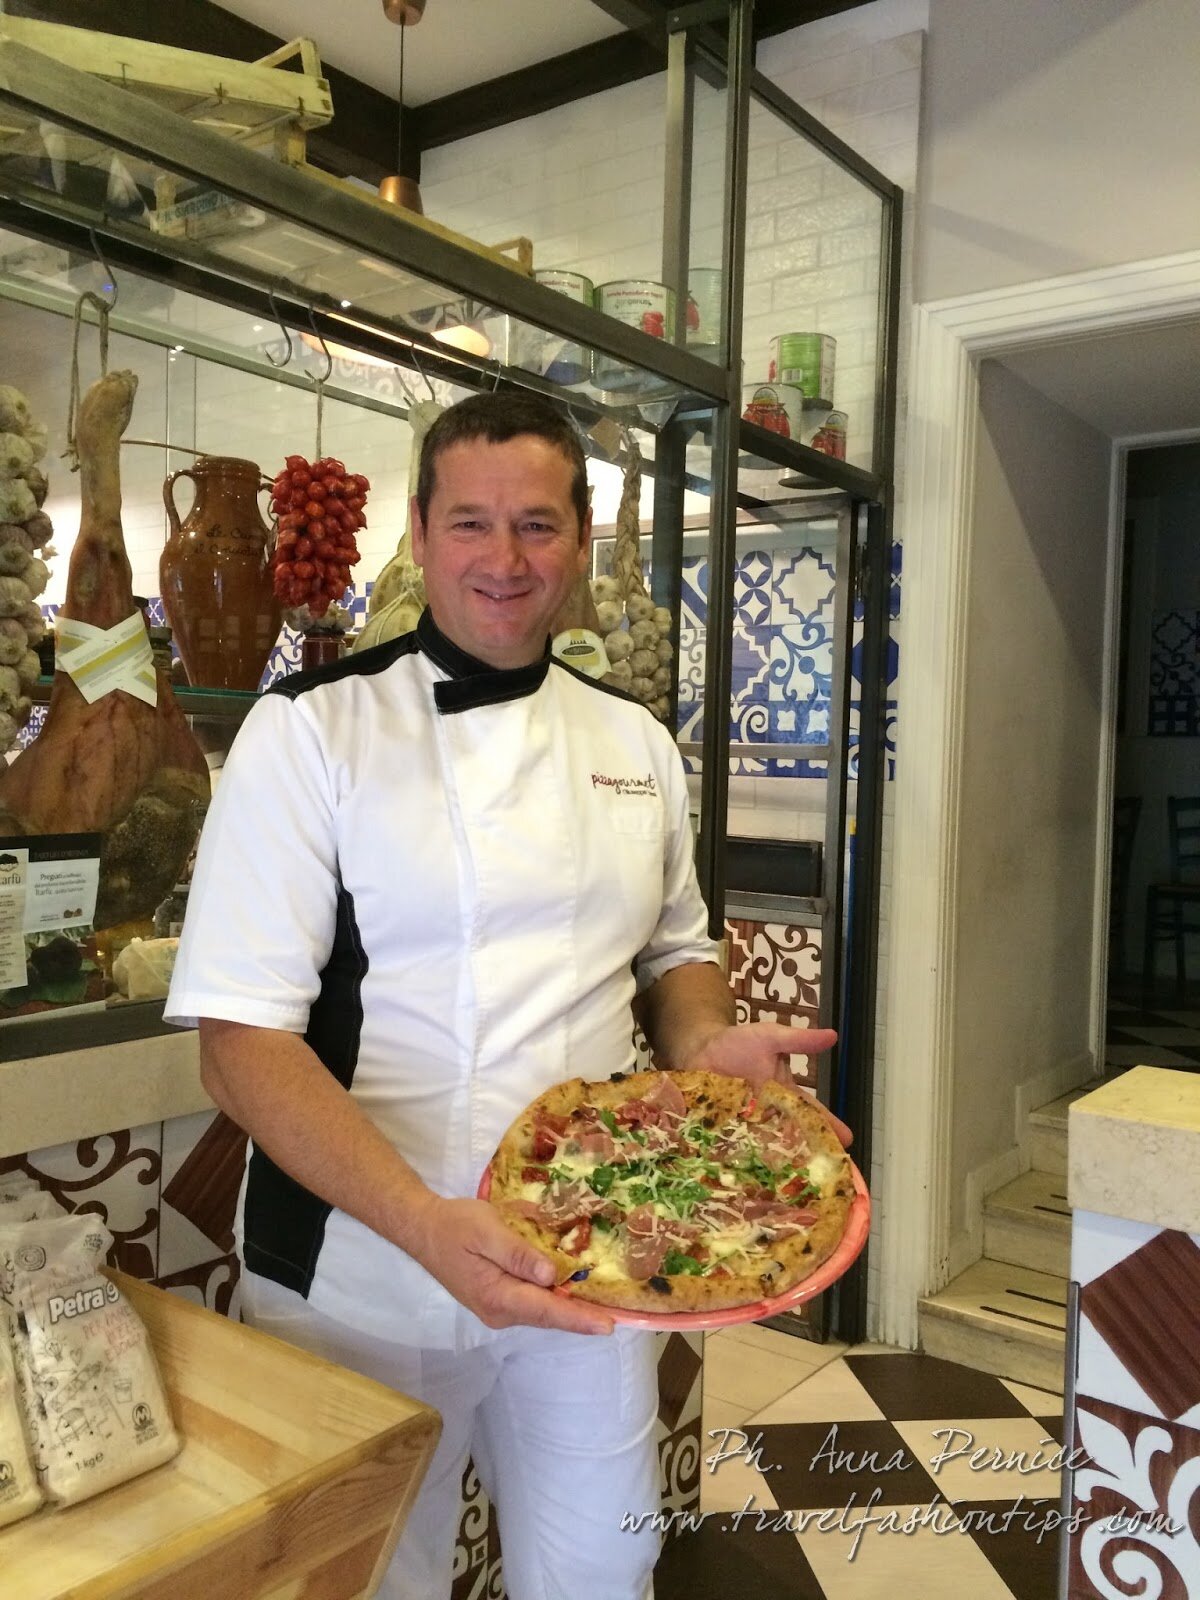 AMPGOURMET, l’Accademia dei maestri pizzaioli gorumet che salvvaguarda e promuove la qualità